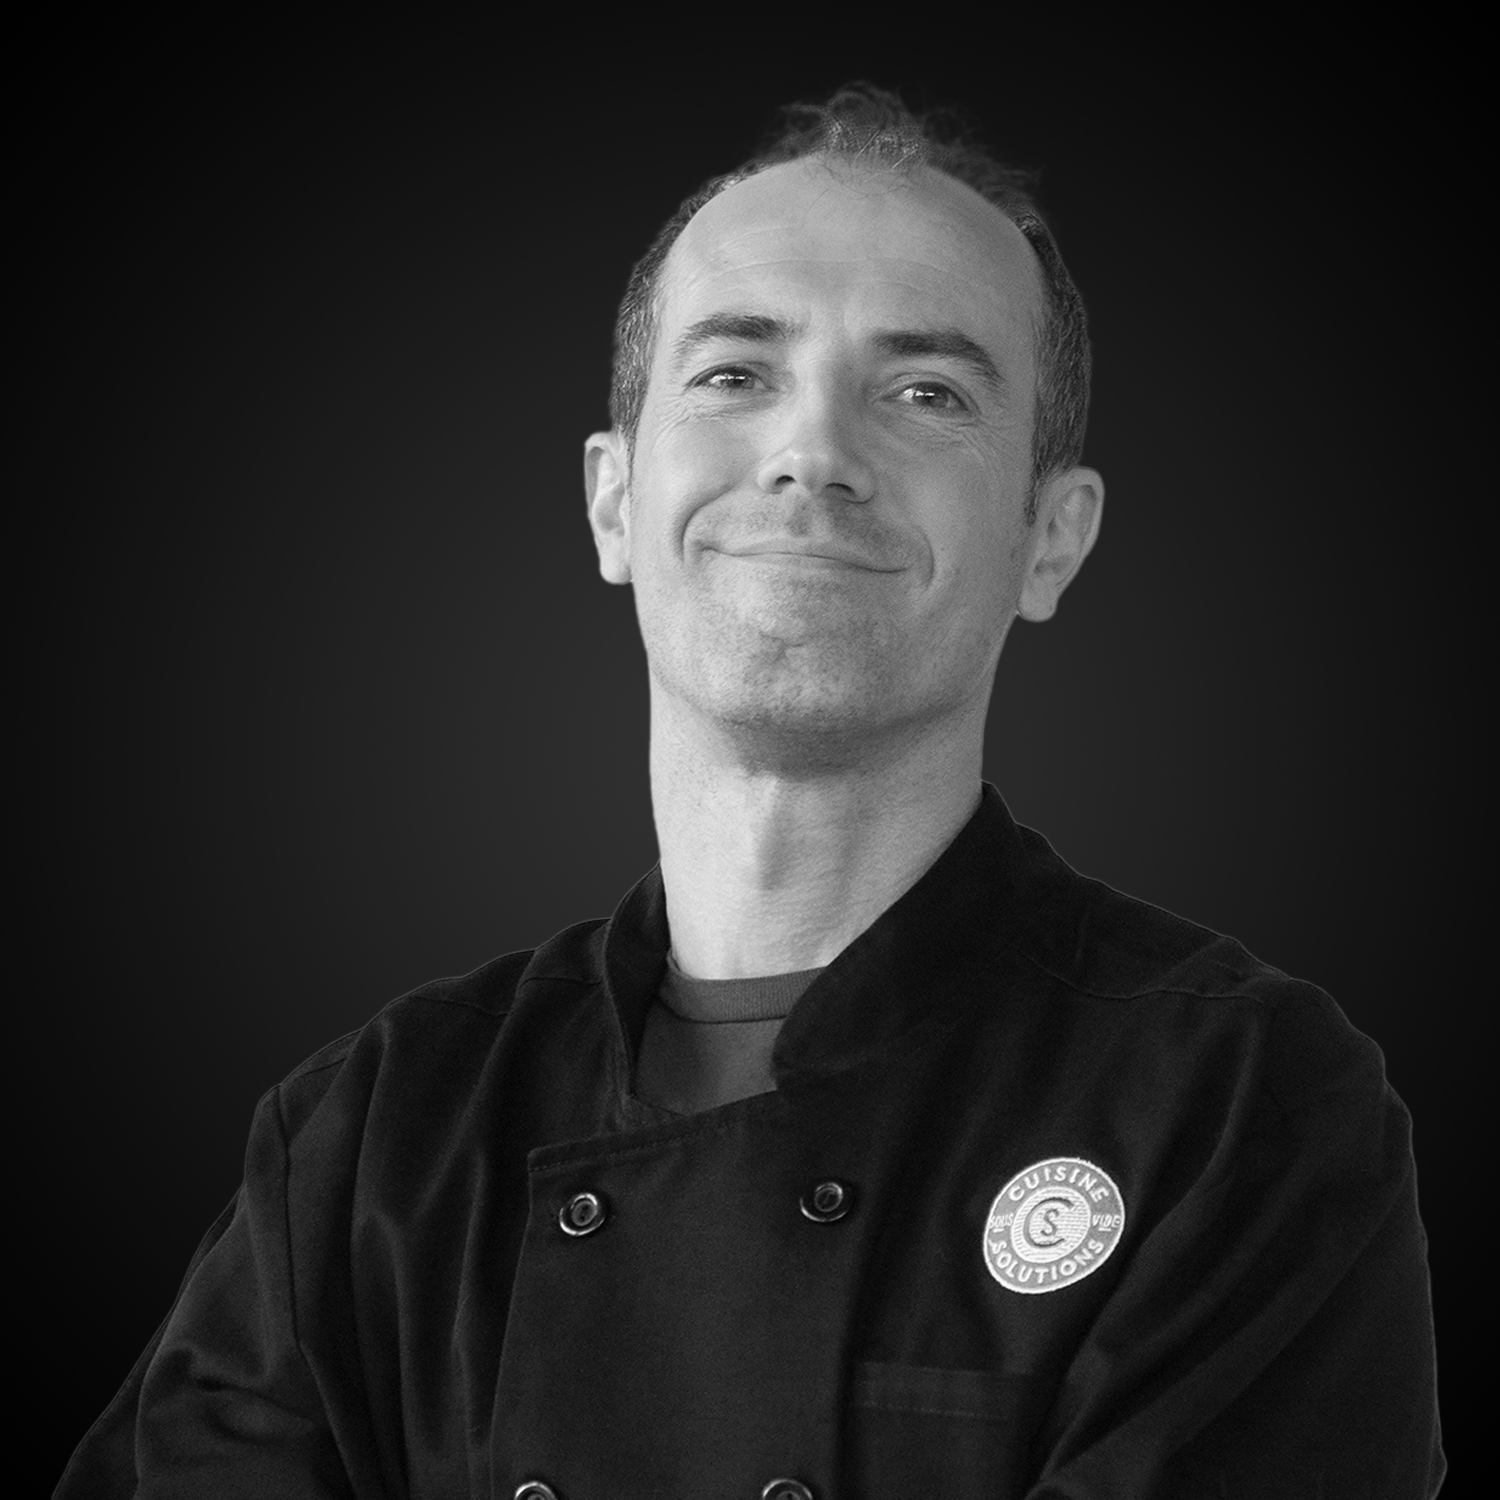 Portrait of Chef Lionel Deshais